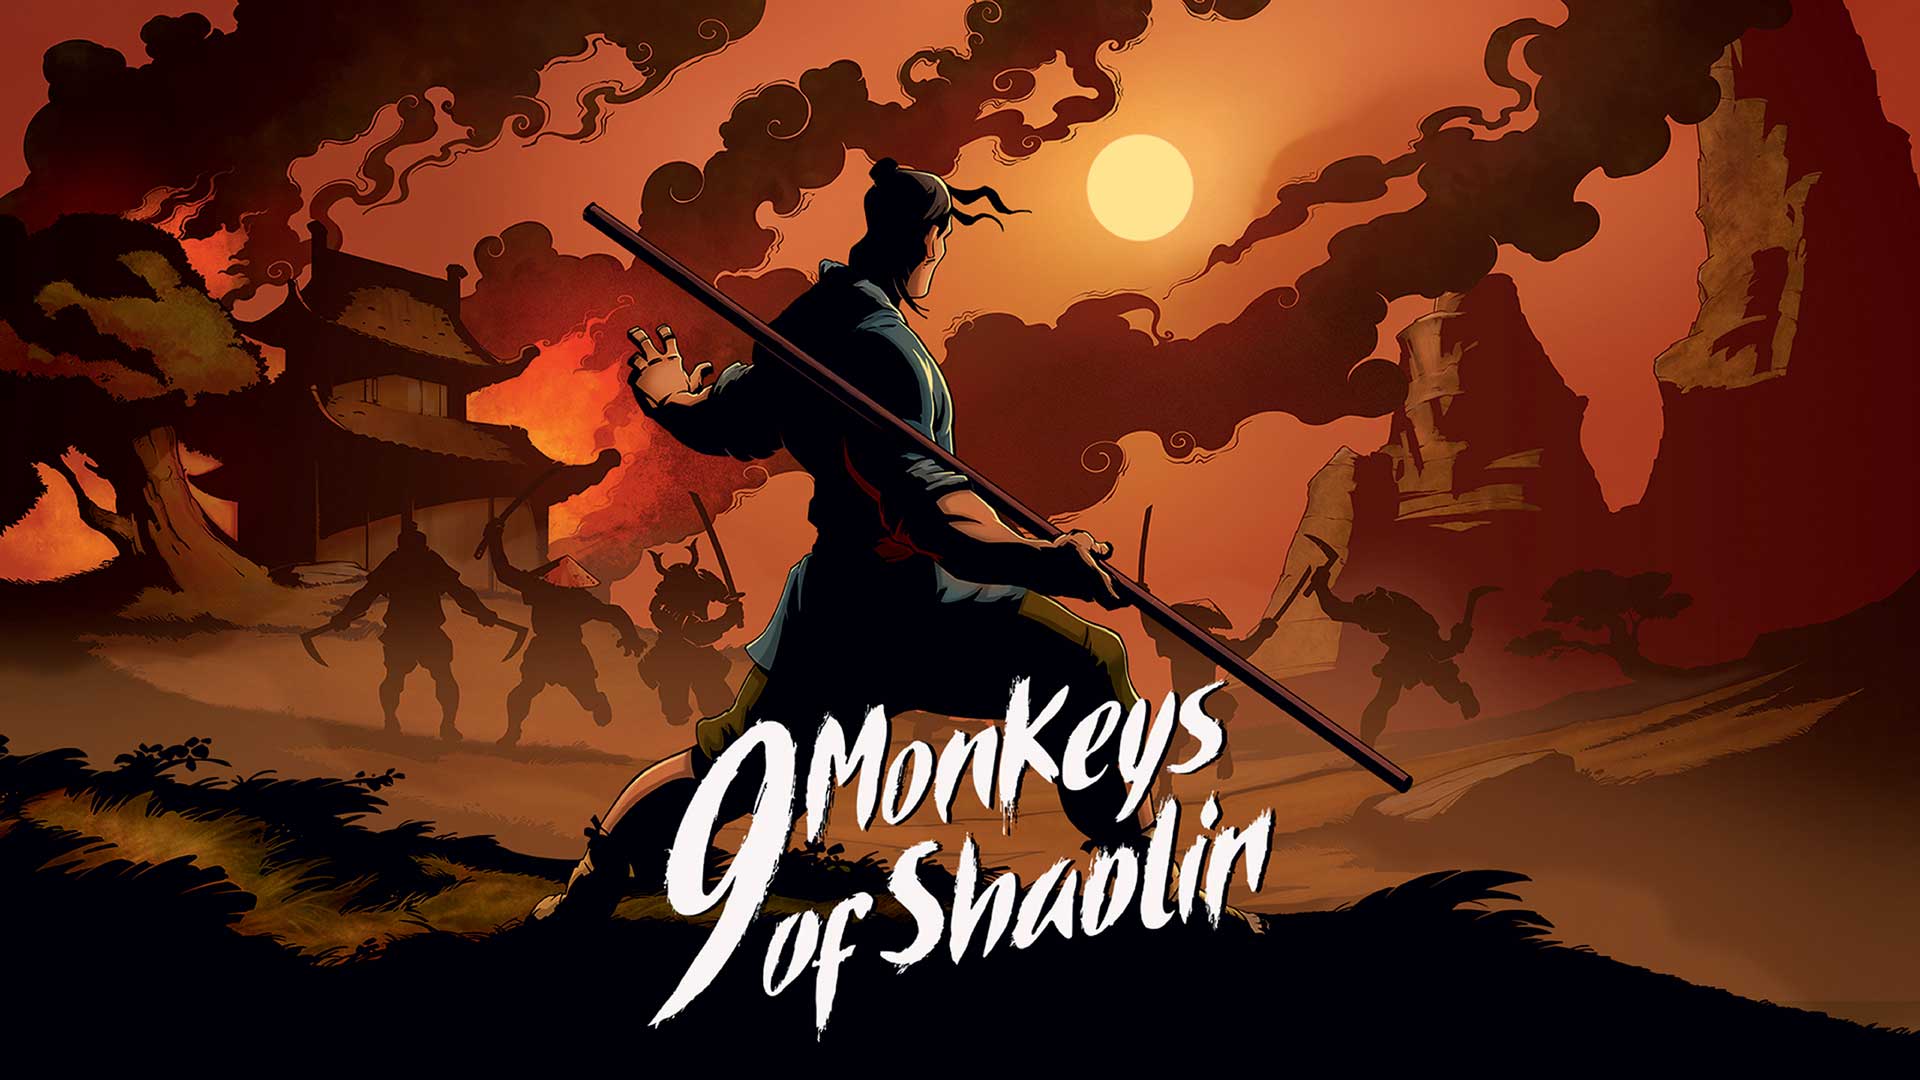 Mala indie igra o Shaolin redovnicima zaludila je cijeli svijet. Nostalgična tematika, nostalgičan žanr, nostalgičan gameplay. Provjerili smo o čemu se radi